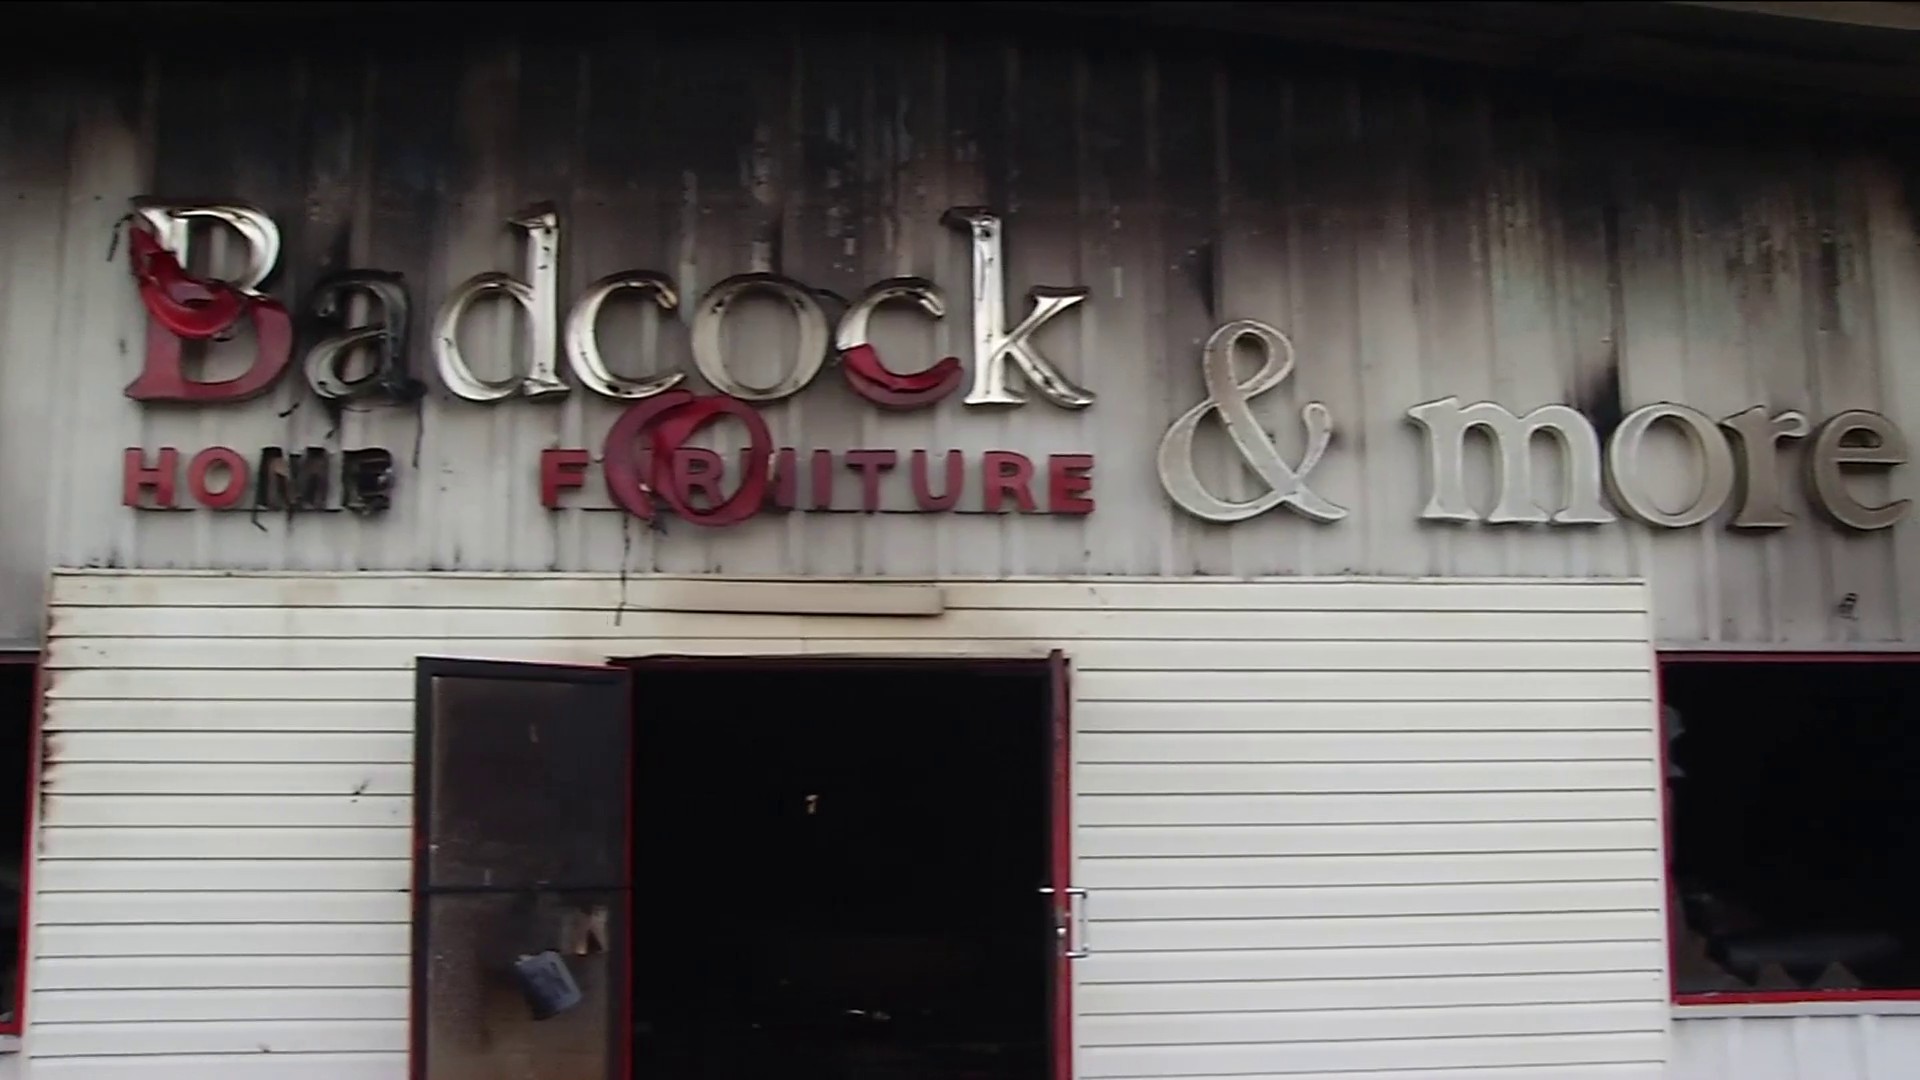 Folkston Badcock Furniture Destroyed After Lightning Strike Fire